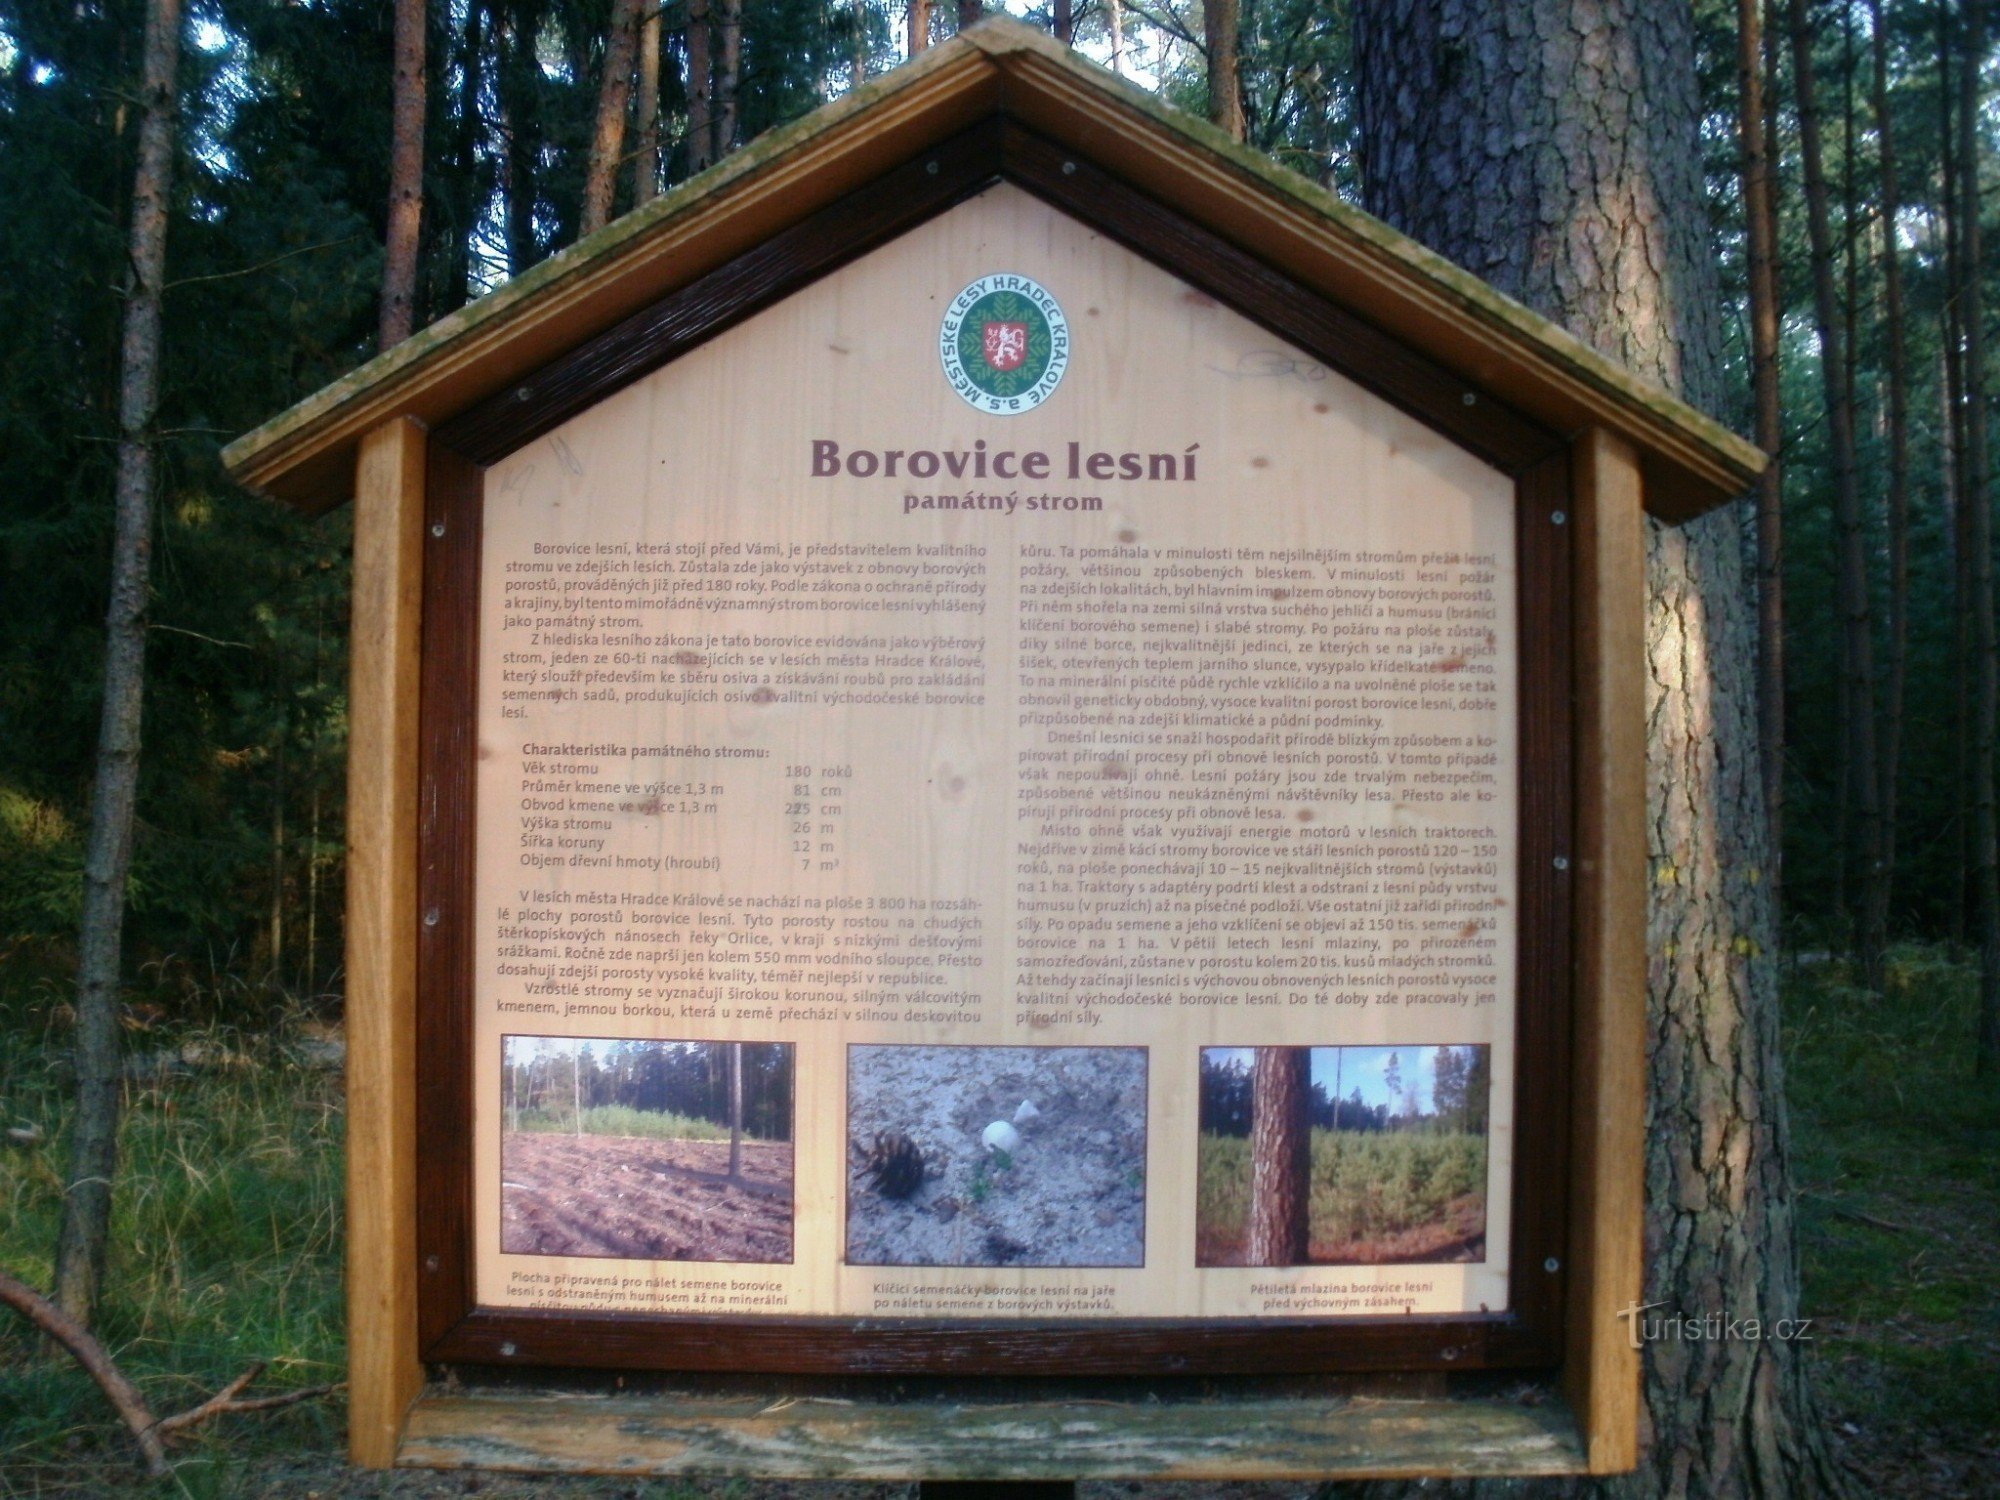 cây thông tưởng niệm - Hradecké lesy